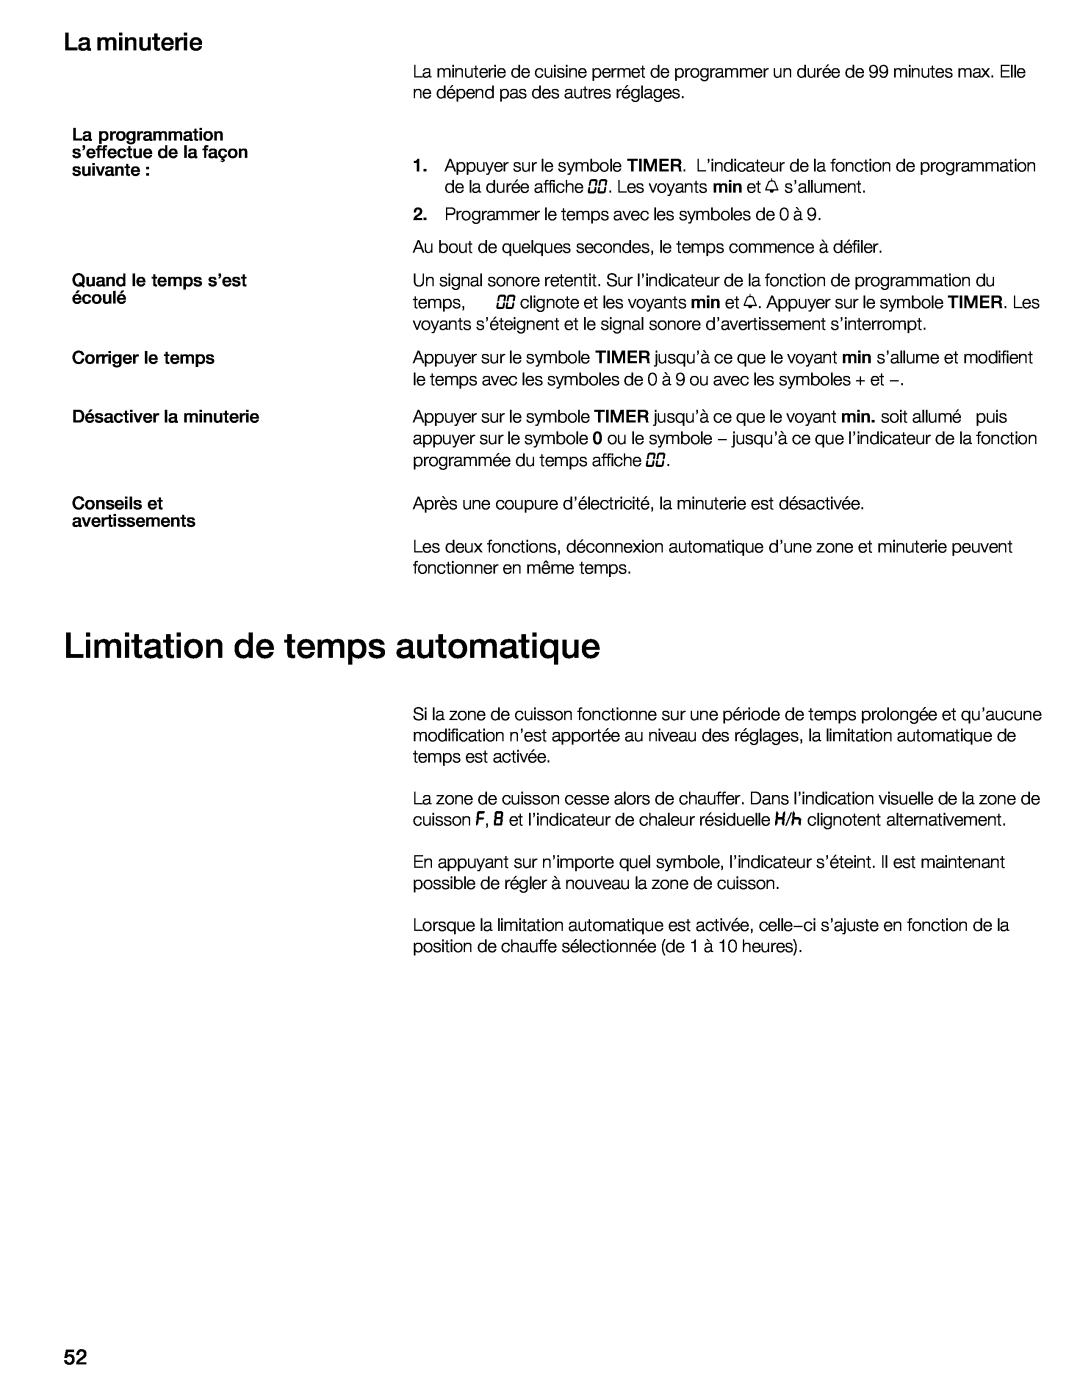 Thermador CIT304GB, CIT304GM manual Limitation de temps automatique, La minuterie 